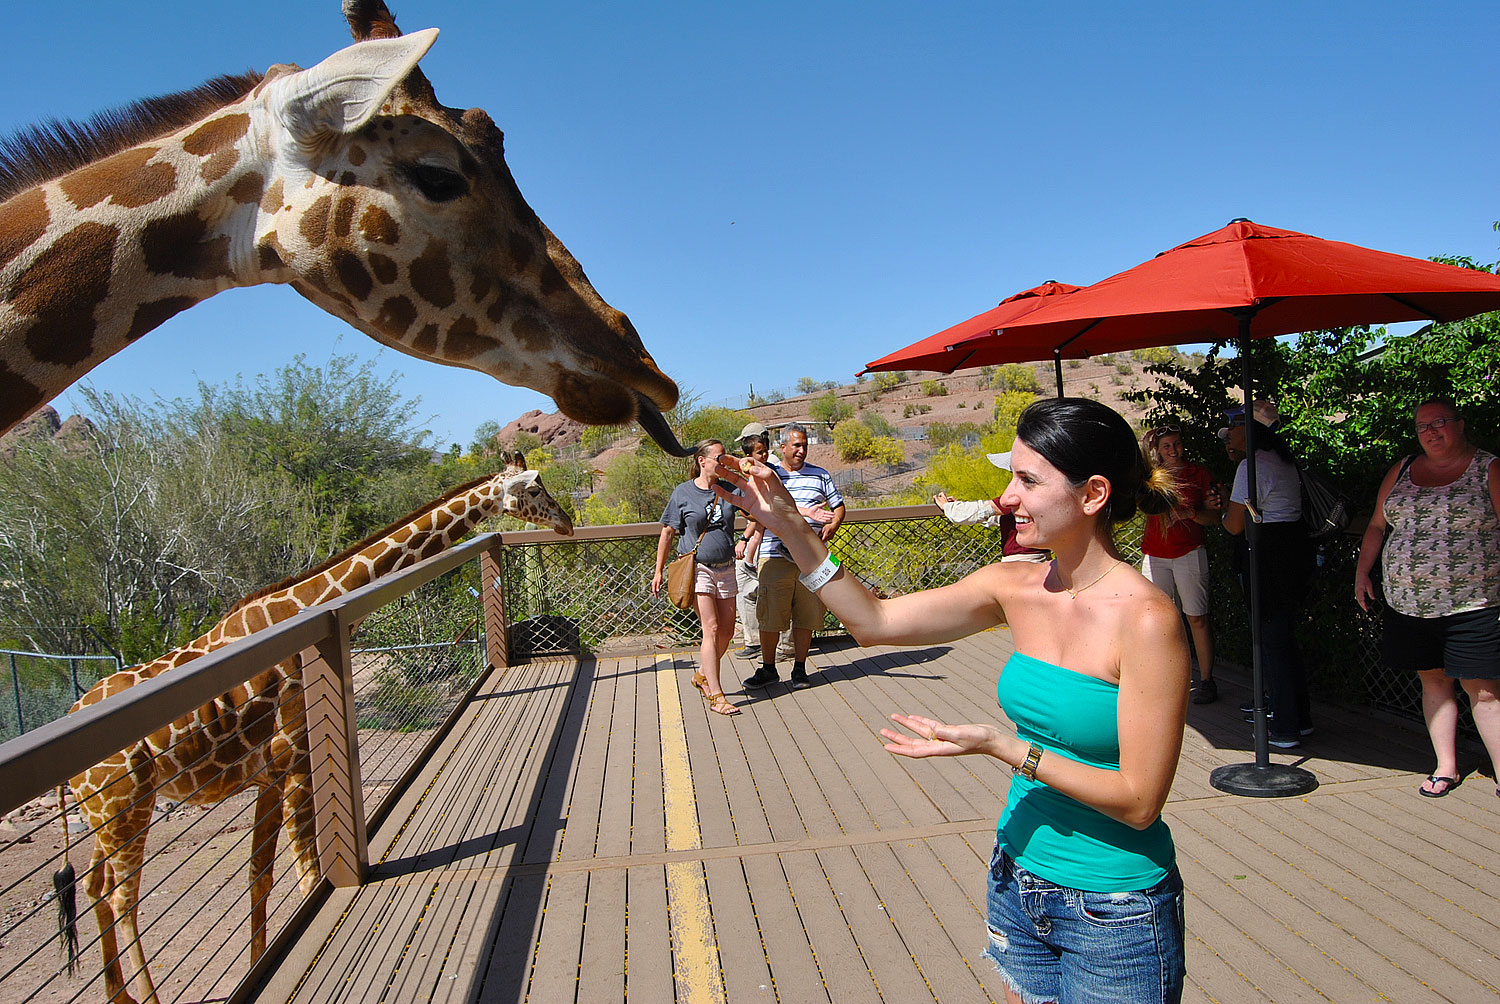 Feed a giraffe